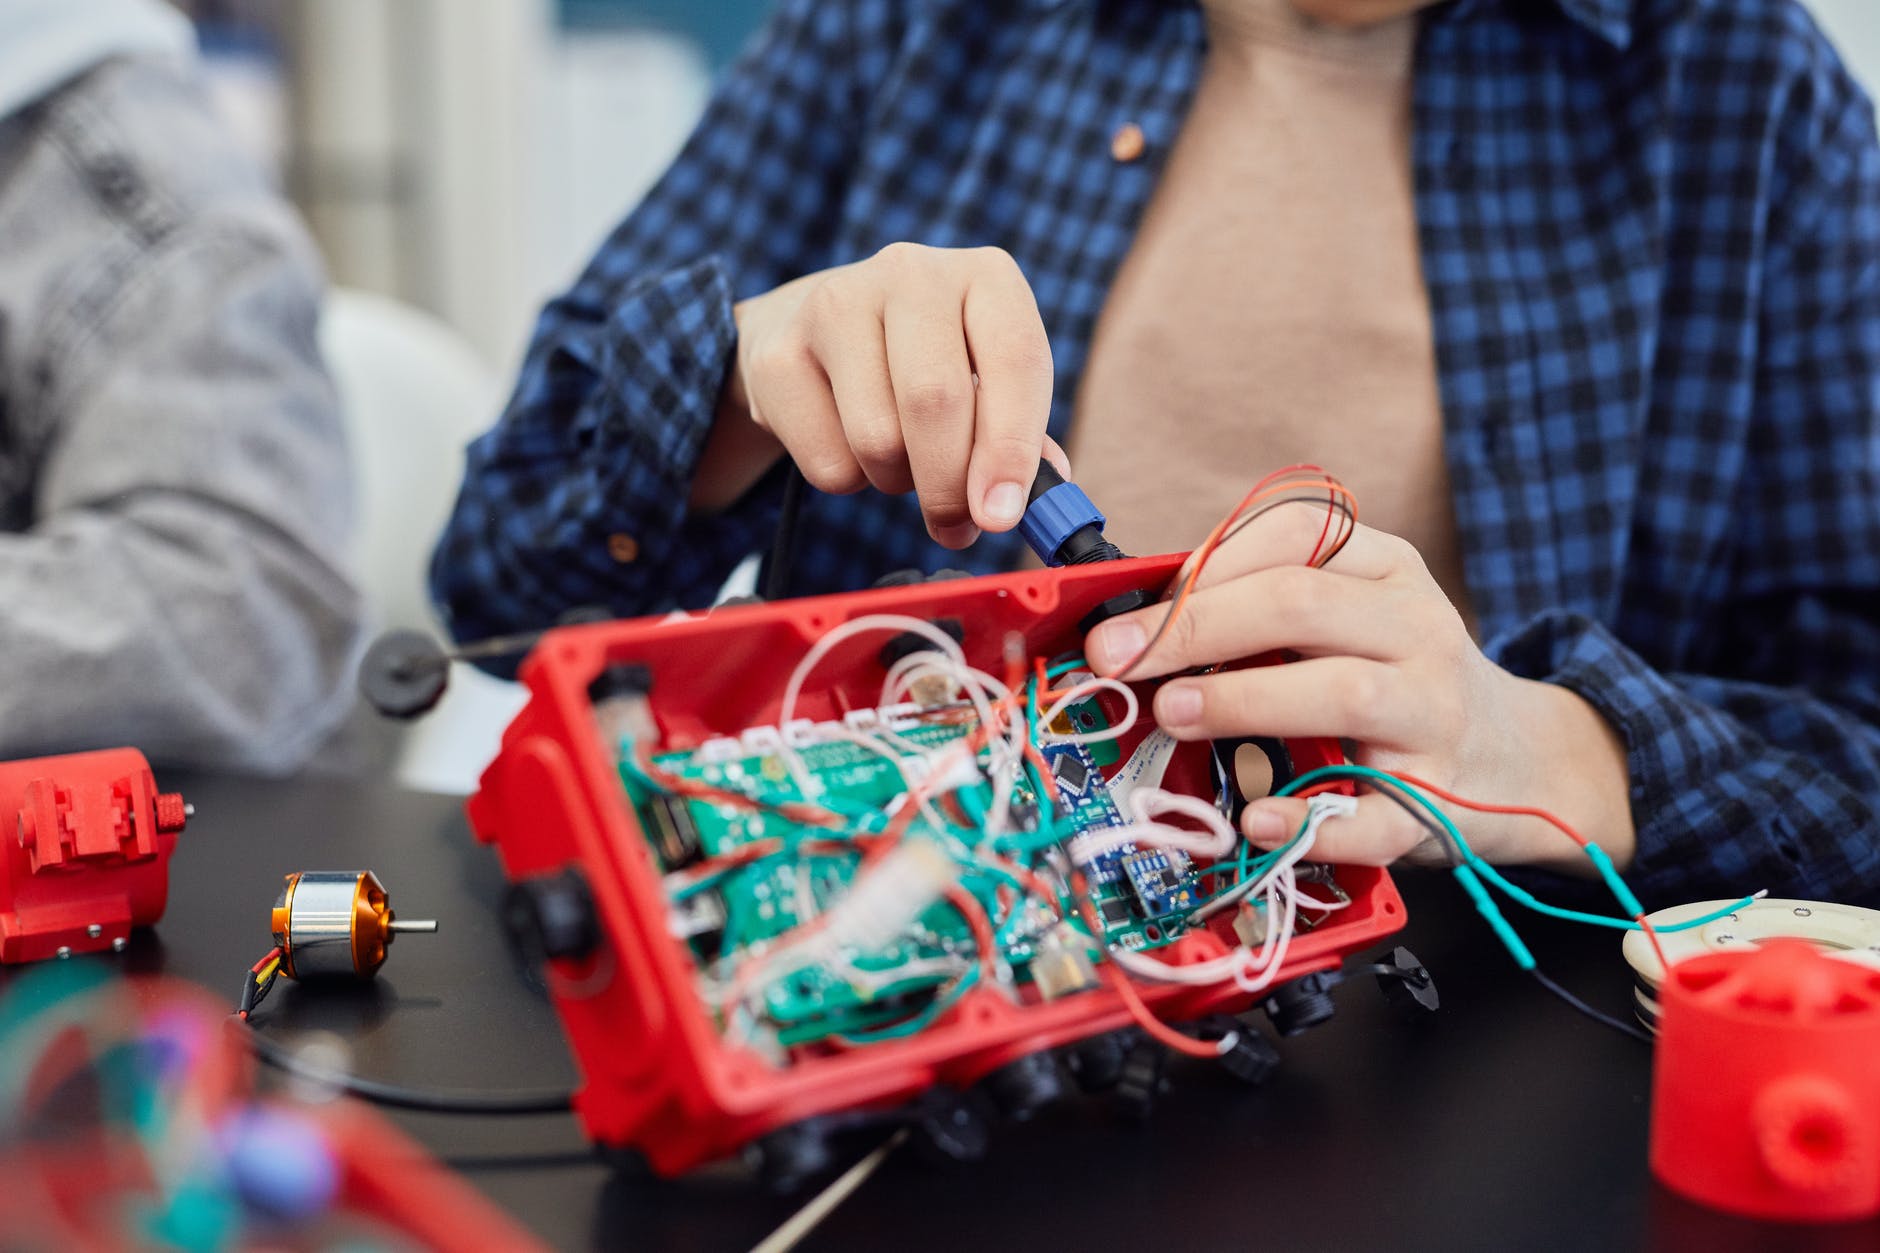 a person fixing electronics